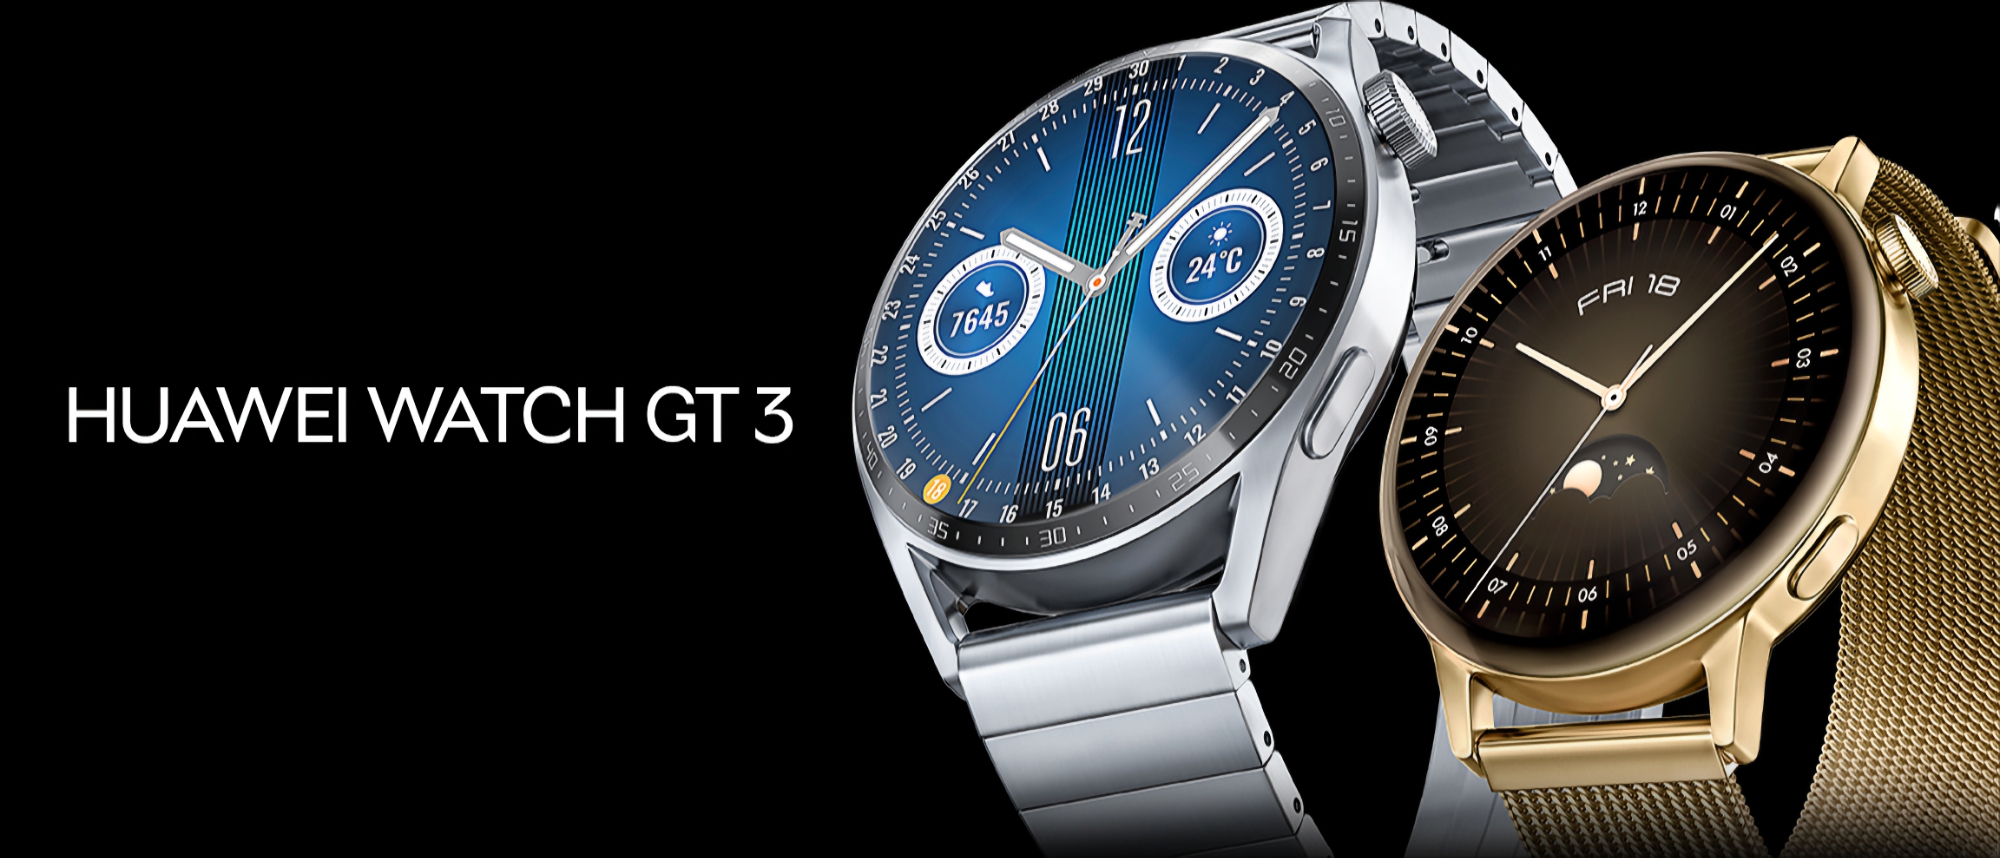 La smartwatch Huawei Watch GT 3 reçoit une nouvelle mise à jour logicielle